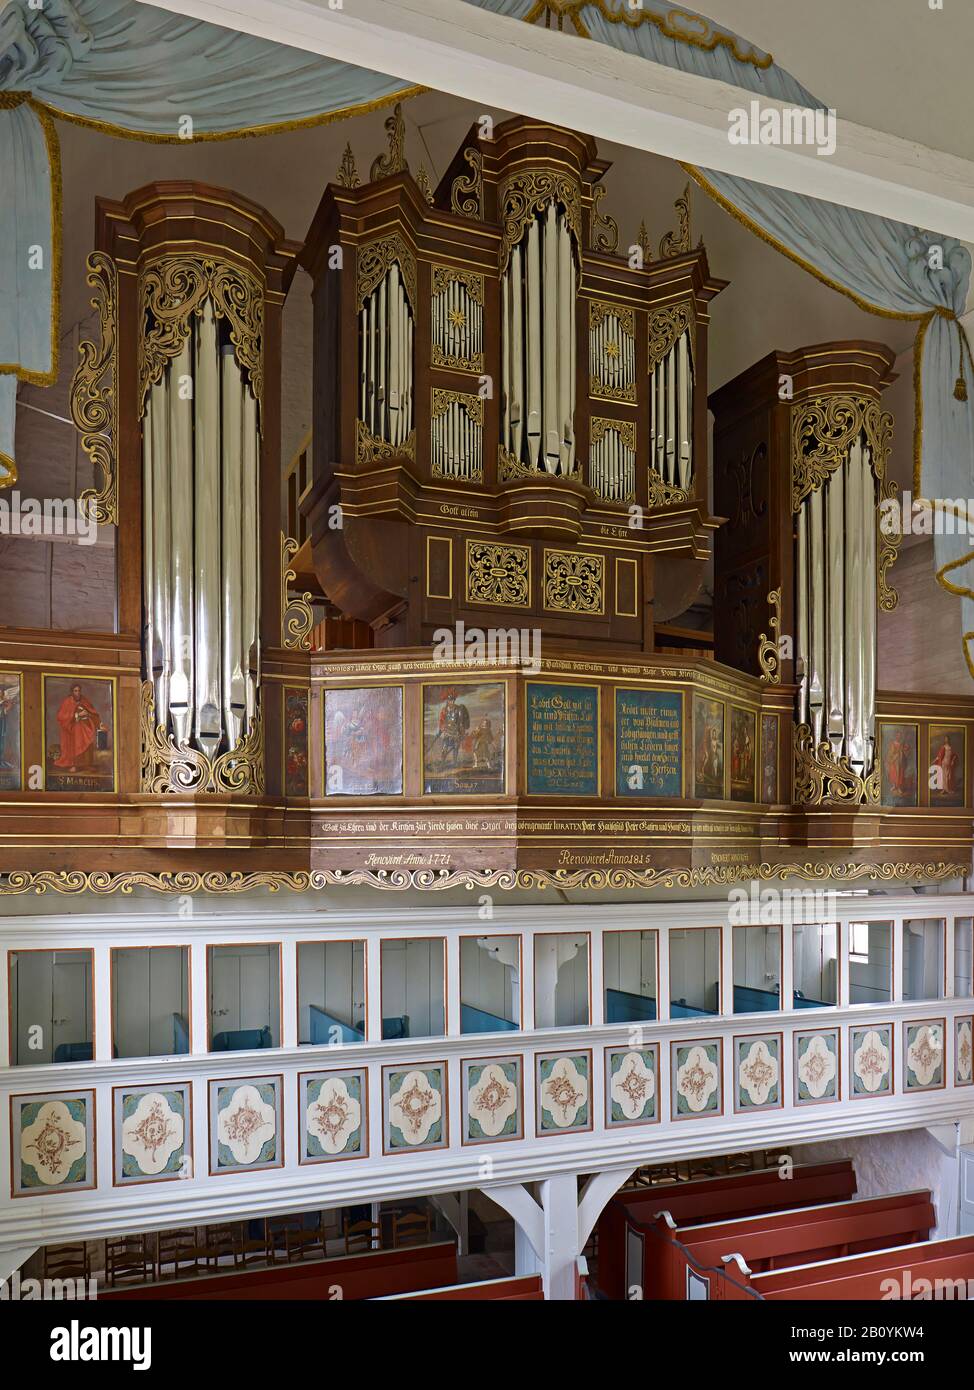 ARP Schnitger-Orgel in der Kirche St. Martini et Nicolai in Steinkirchen, Altes Land, Landkreis Stade, Niedersachsen, Deutschland, Stockfoto